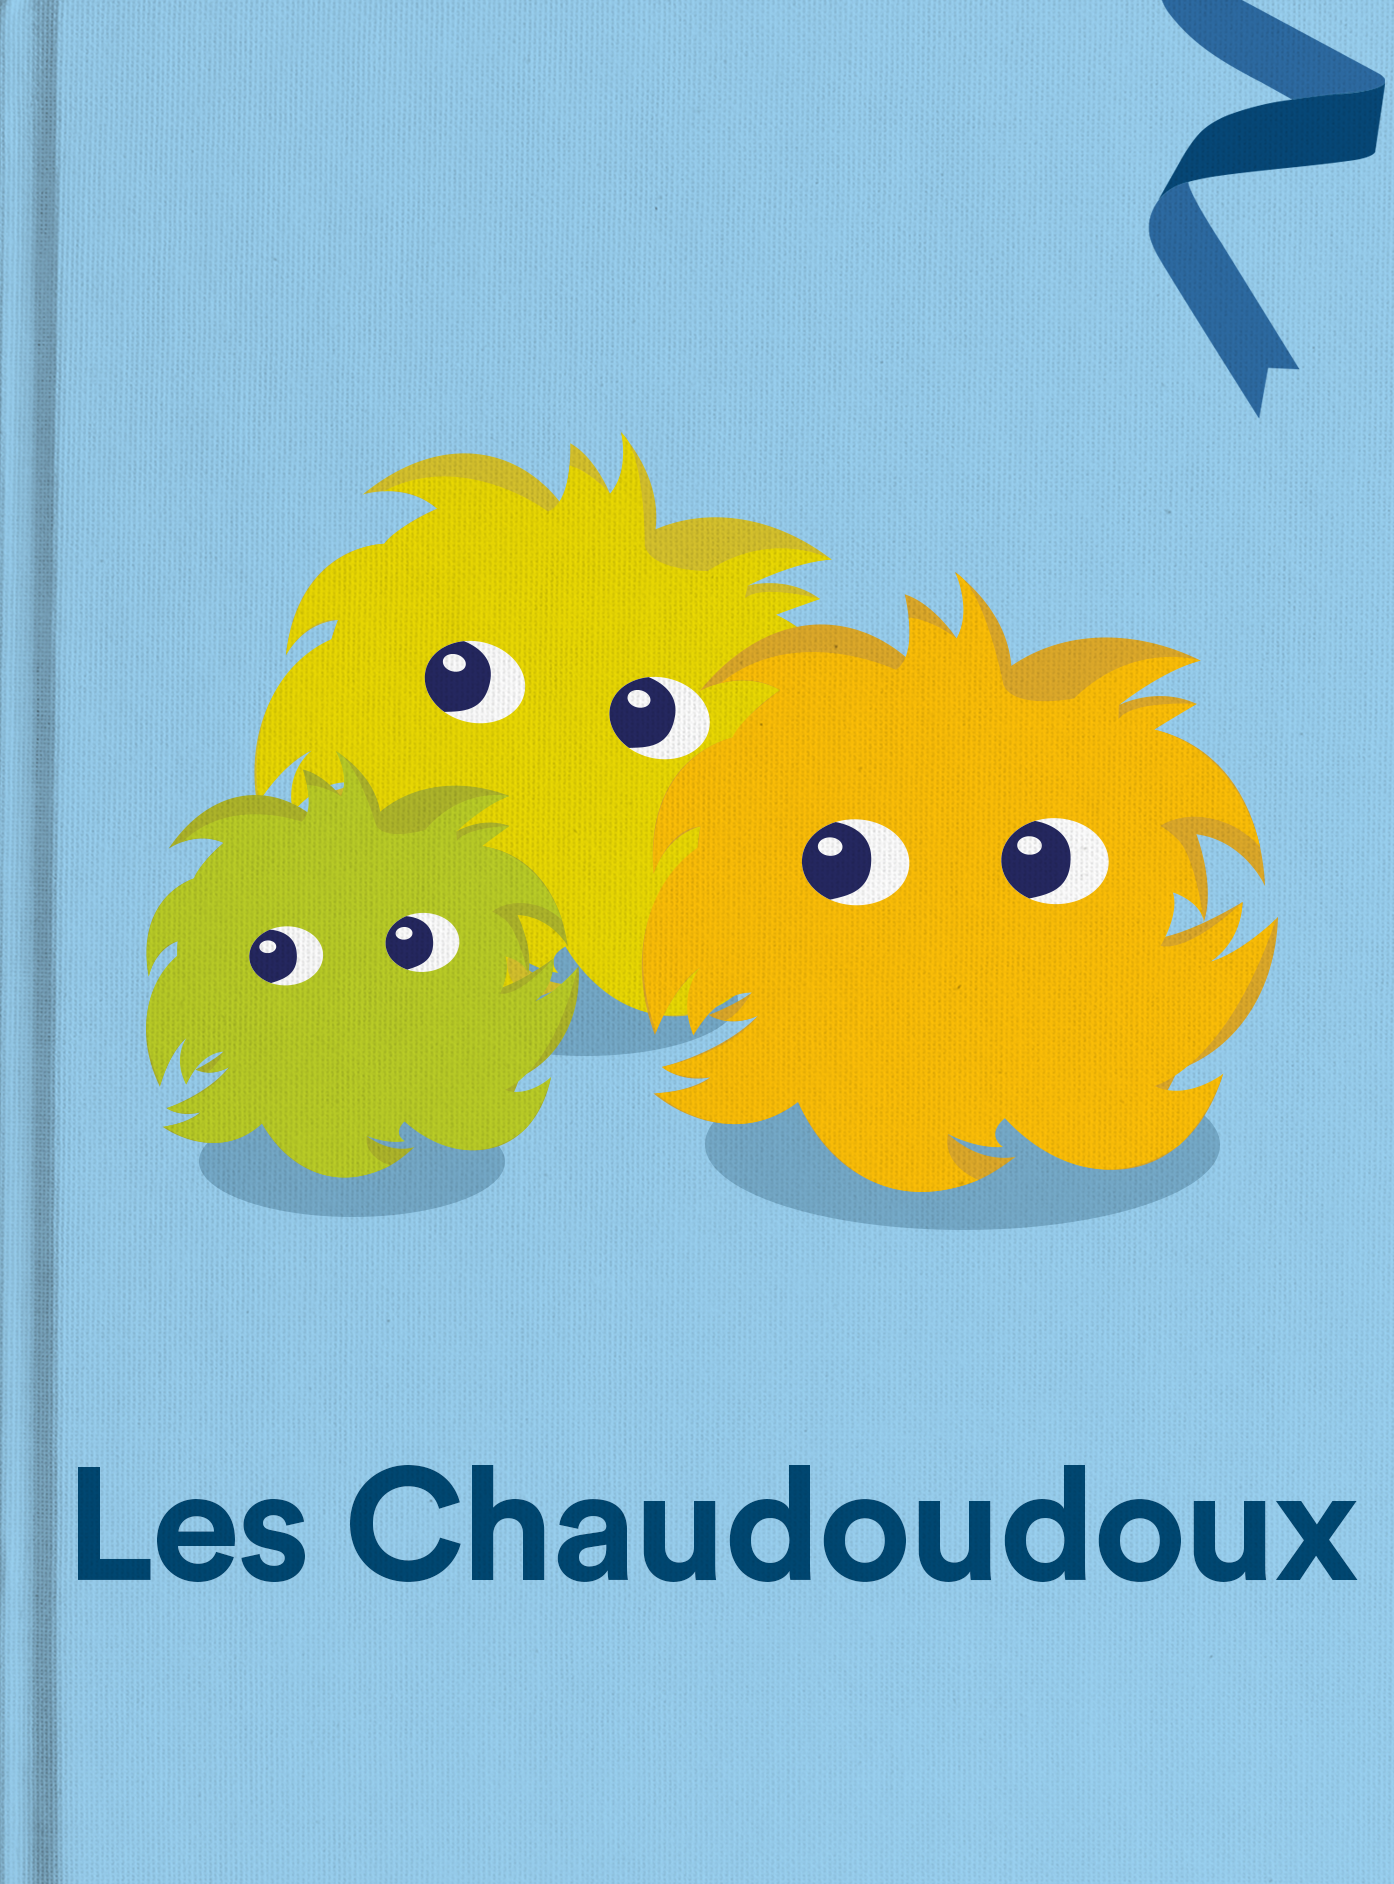 Les Chaudoudoux